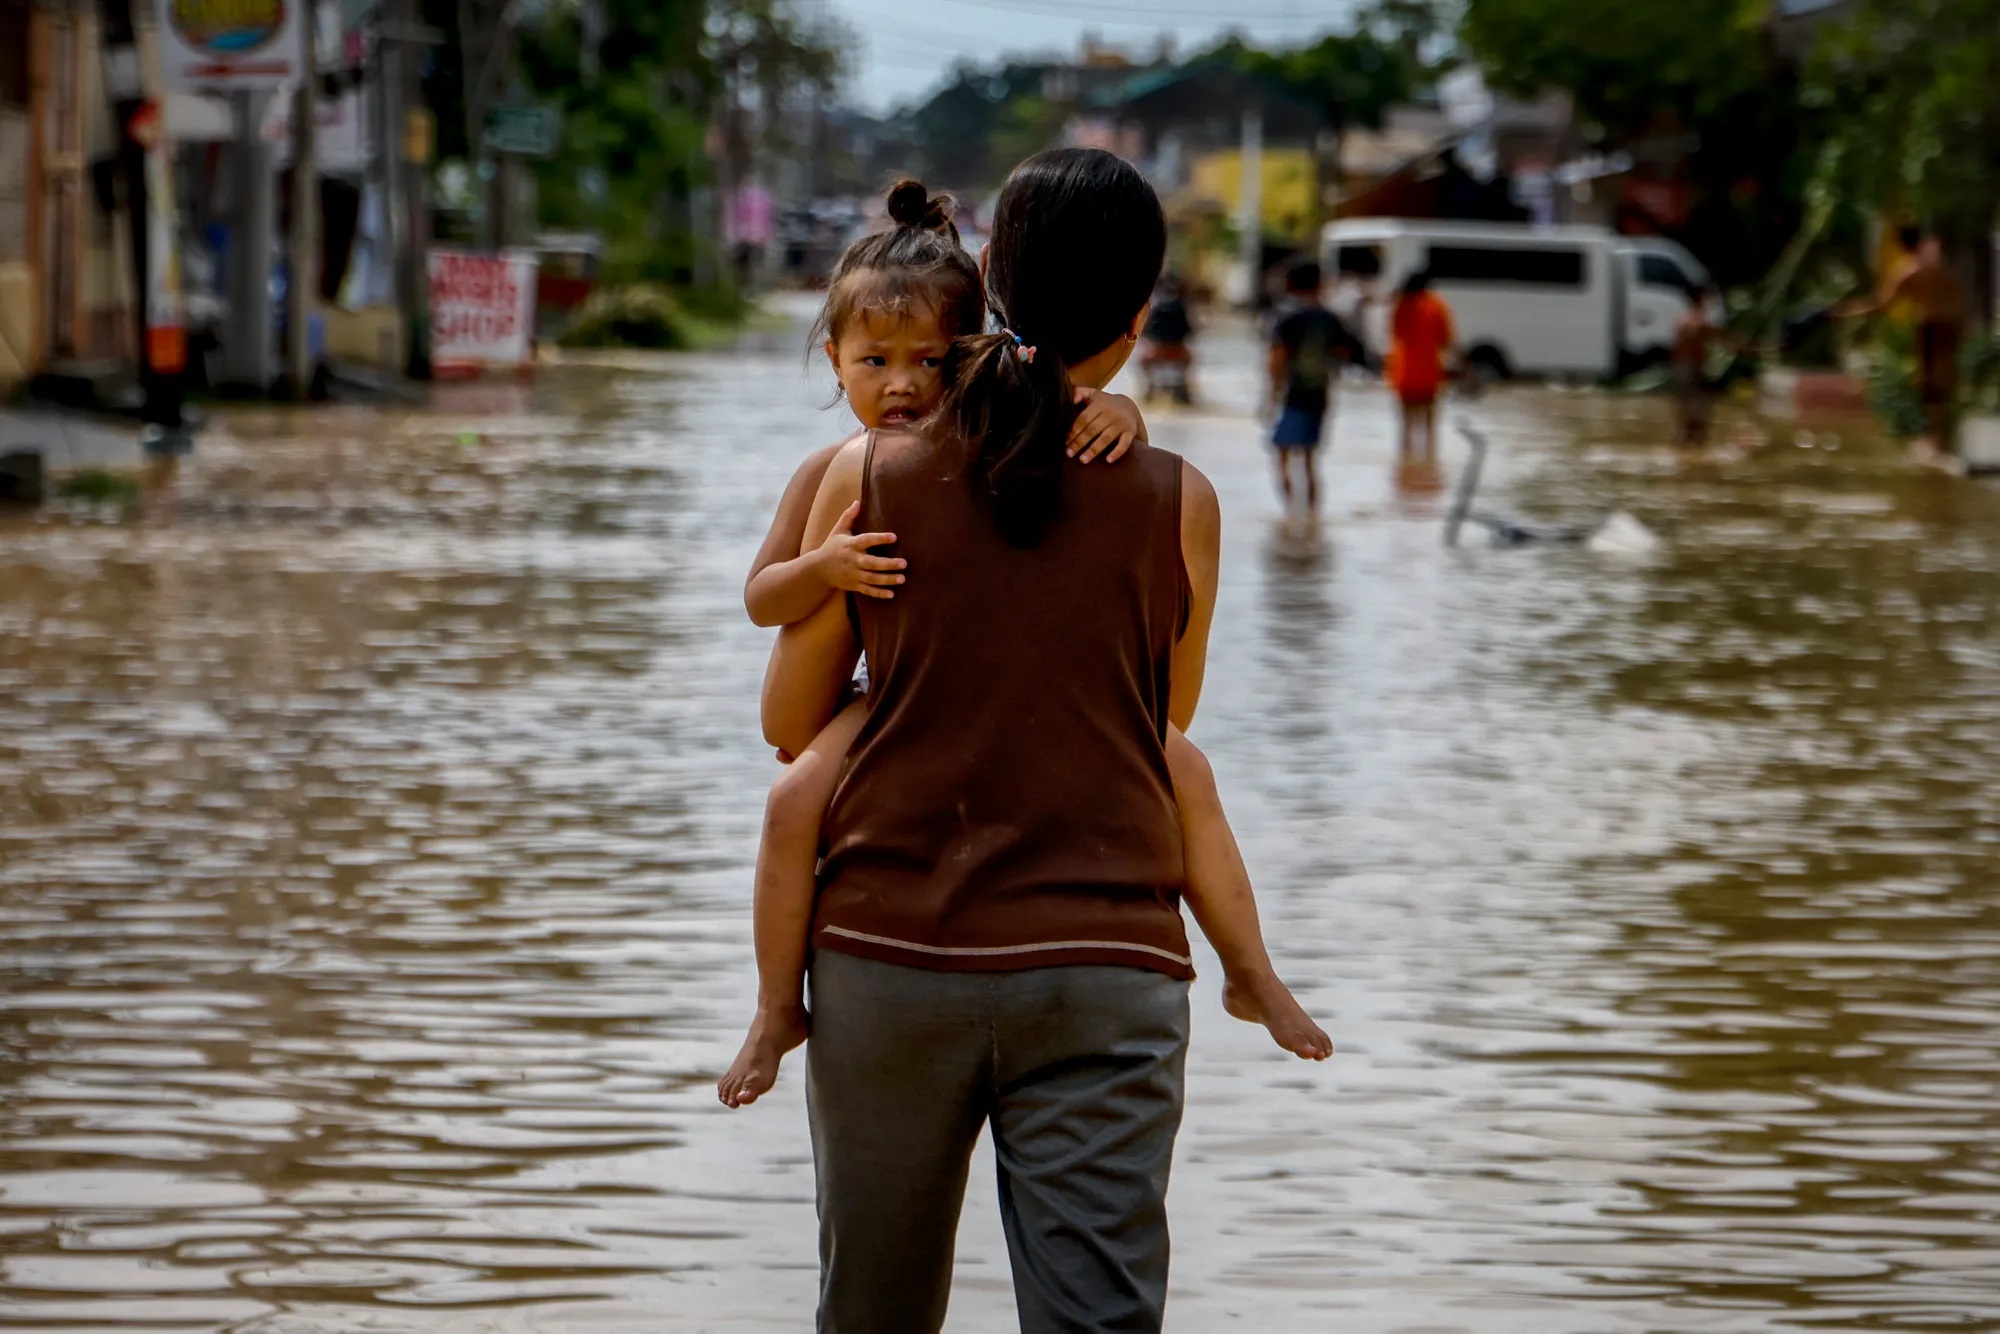 Một người phụ nữ bế con qua dòng nước lũ do siêu bão Noru gây ra ở San Miguel, tỉnh Bulacan, Philippines vào tháng 9. Siêu bão Noru đổ bộ vào Philippines trong đêm, gây lũ lụt trên diện rộng và khiến ít nhất 5 người thiệt mạng. (Ảnh: Getty Images)